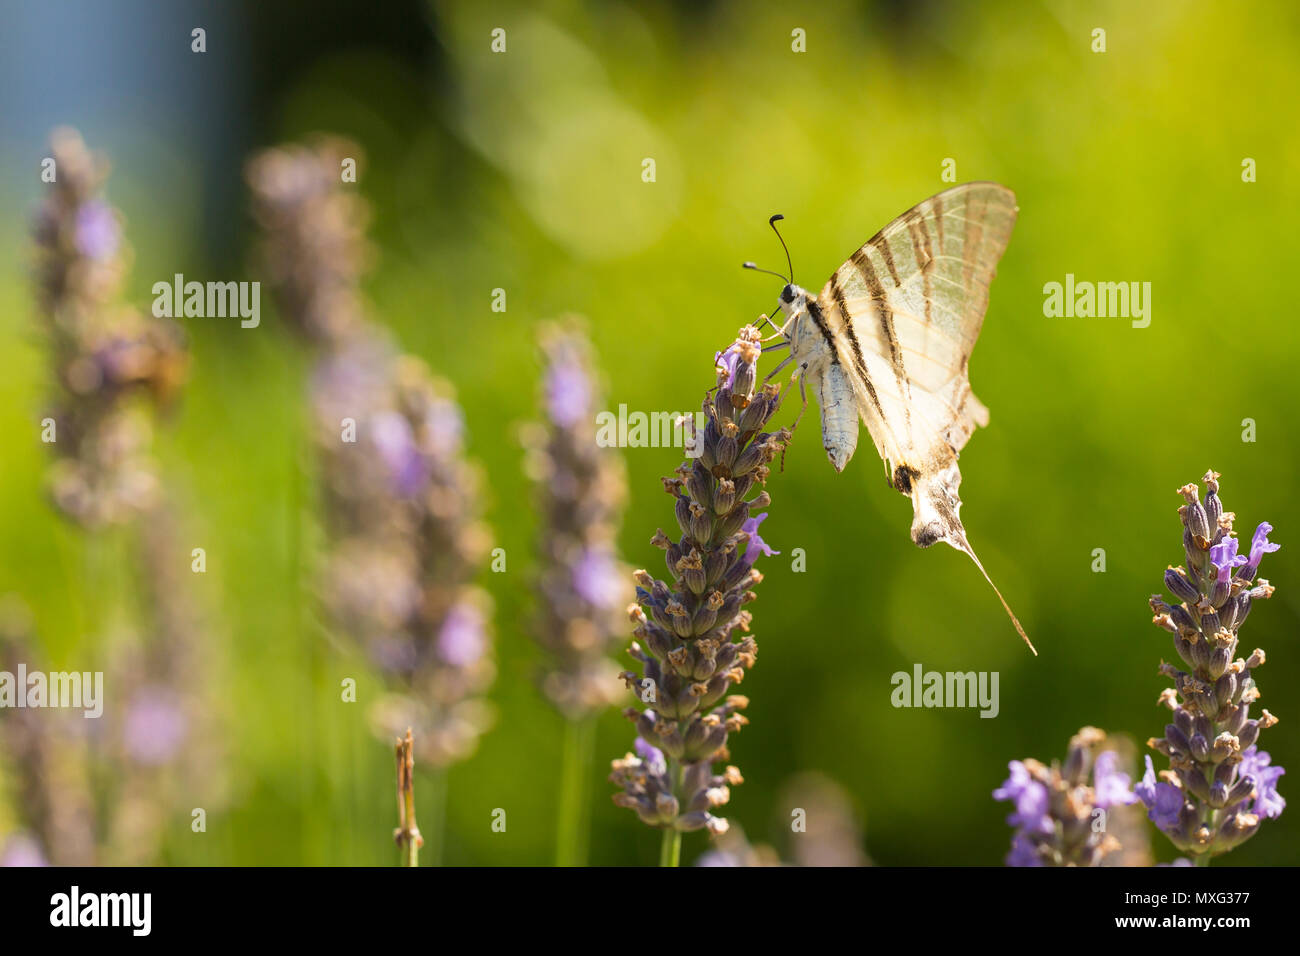 Les rares swallowtail butterfly (Iphiclides podalirius) volant fleur en fleur tandis que la pollinisation et d'alimentation sur le nectar de lavande pourpre. Banque D'Images